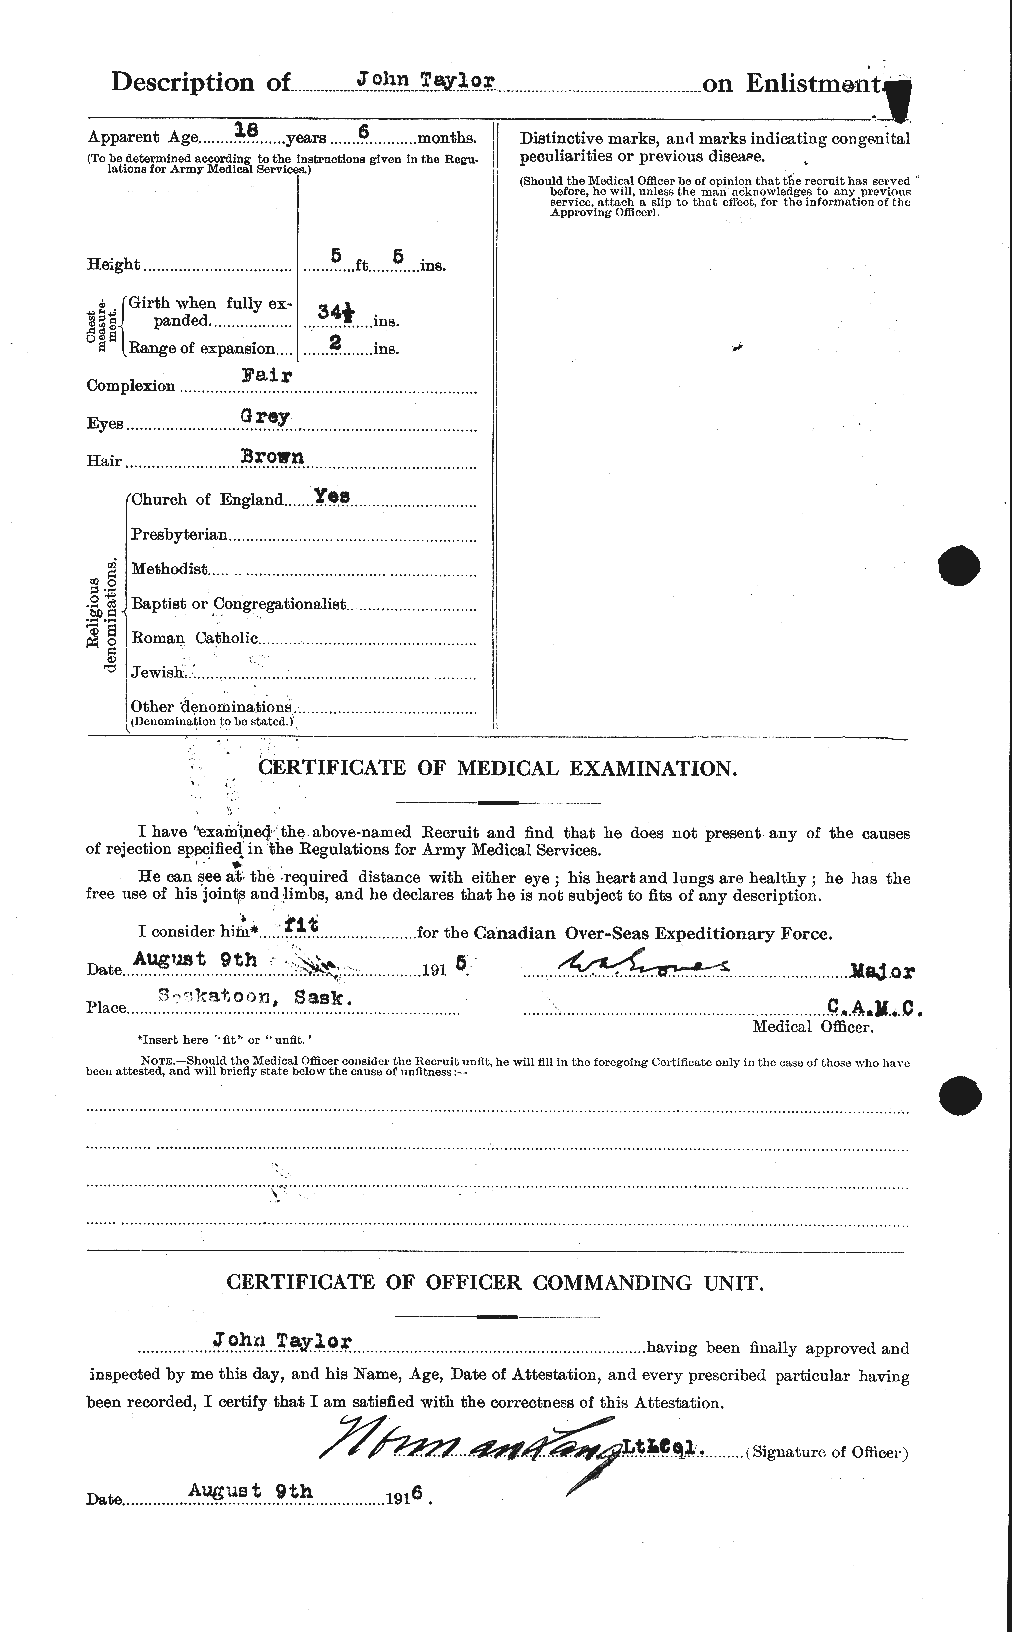 Dossiers du Personnel de la Première Guerre mondiale - CEC 627010b